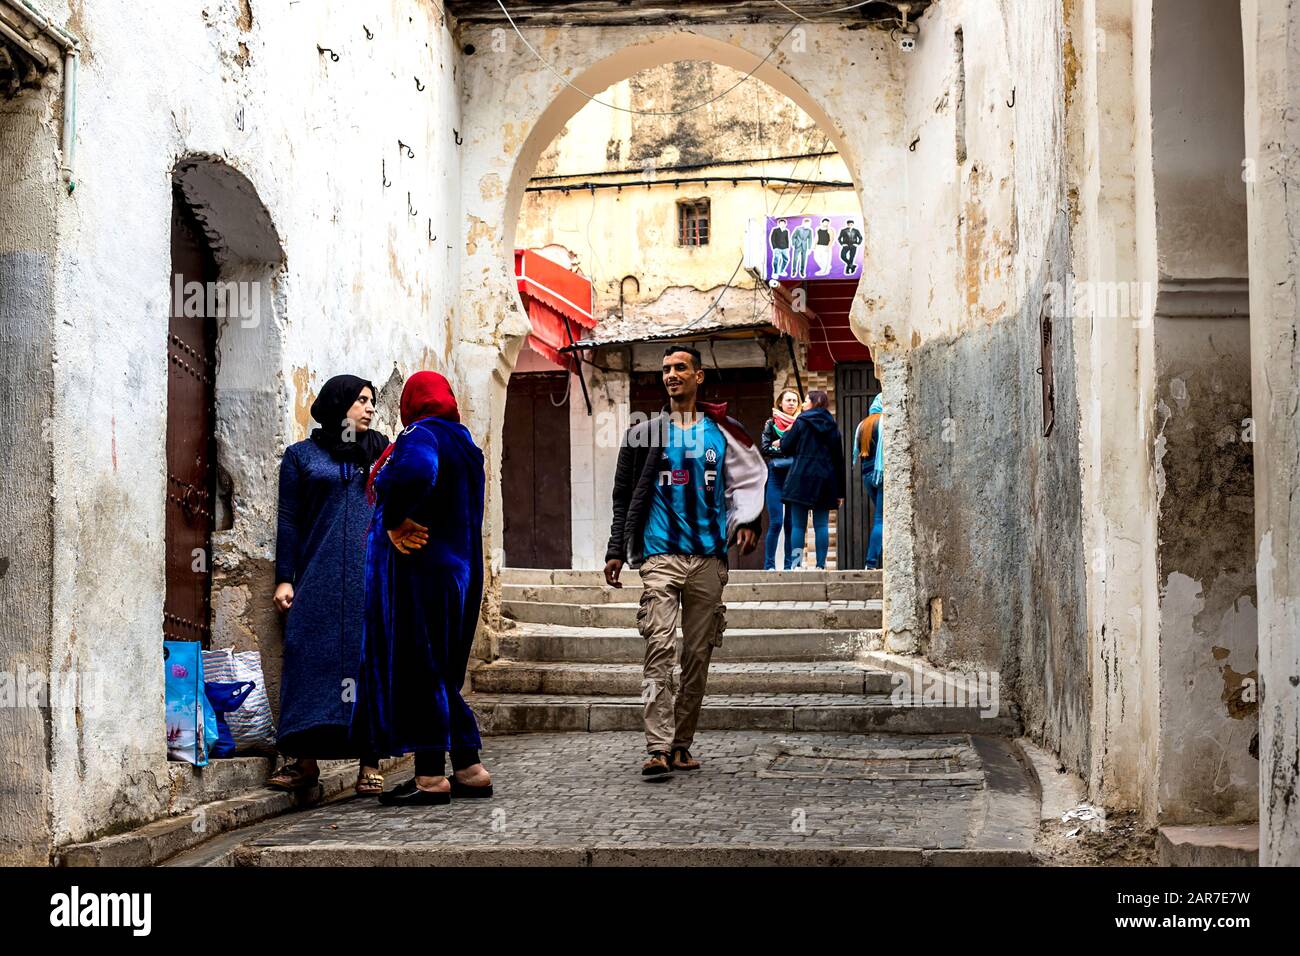 Fes, Maroc - 21,04, 2019: Les gens marchent dans la rue du bazar de marché en plein air à Fez. Magasins traditionnels nord-africains, avec stuf artisanal Banque D'Images